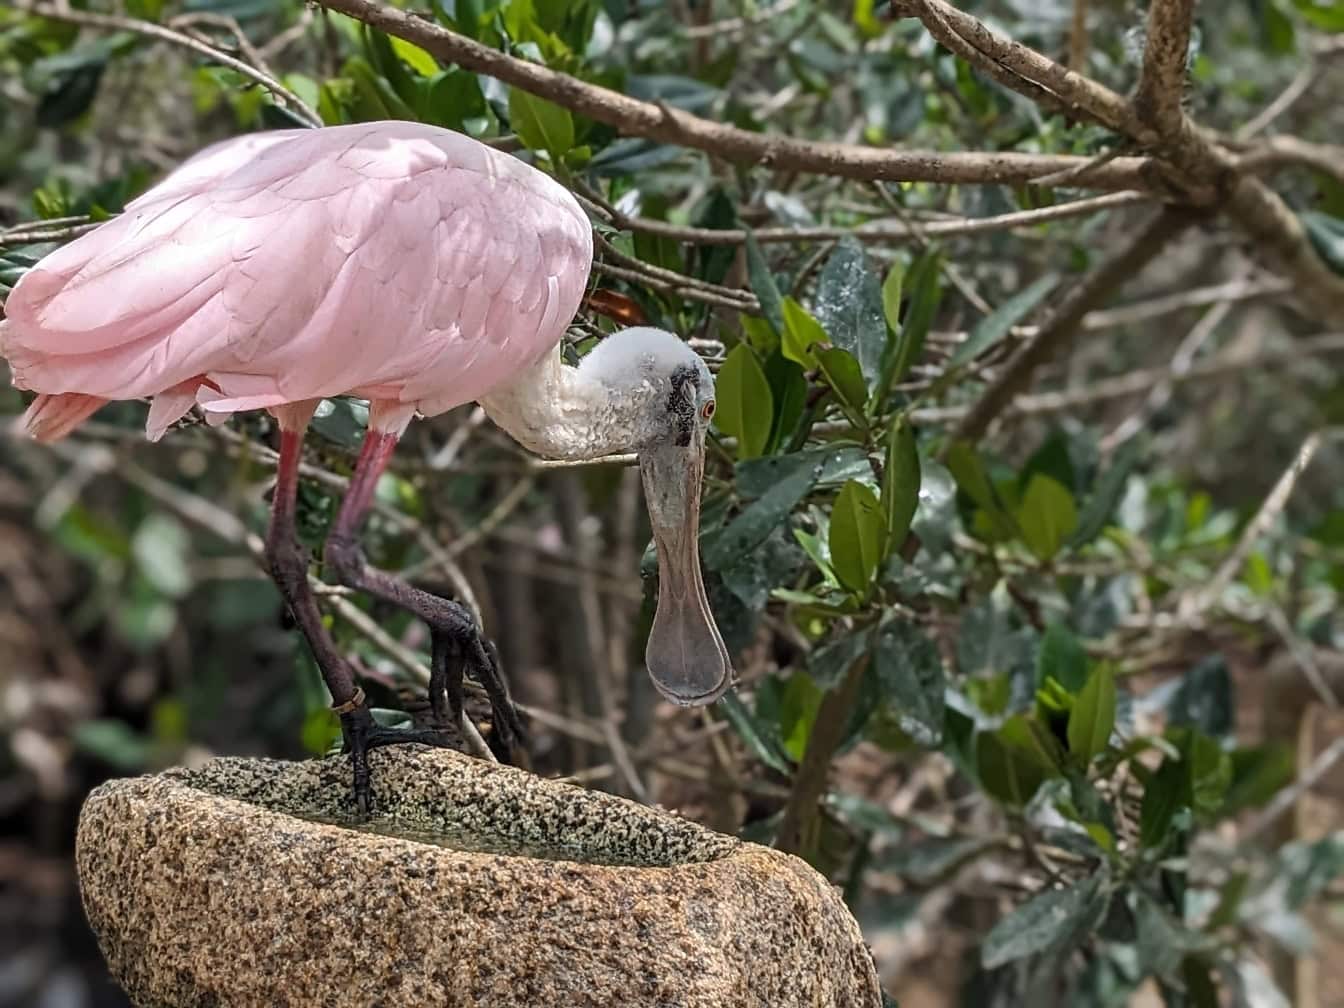 玫瑰琵鹭鸟 (Platalea ajaja) 来自美洲热带地区的热带粉红色涉水鸟